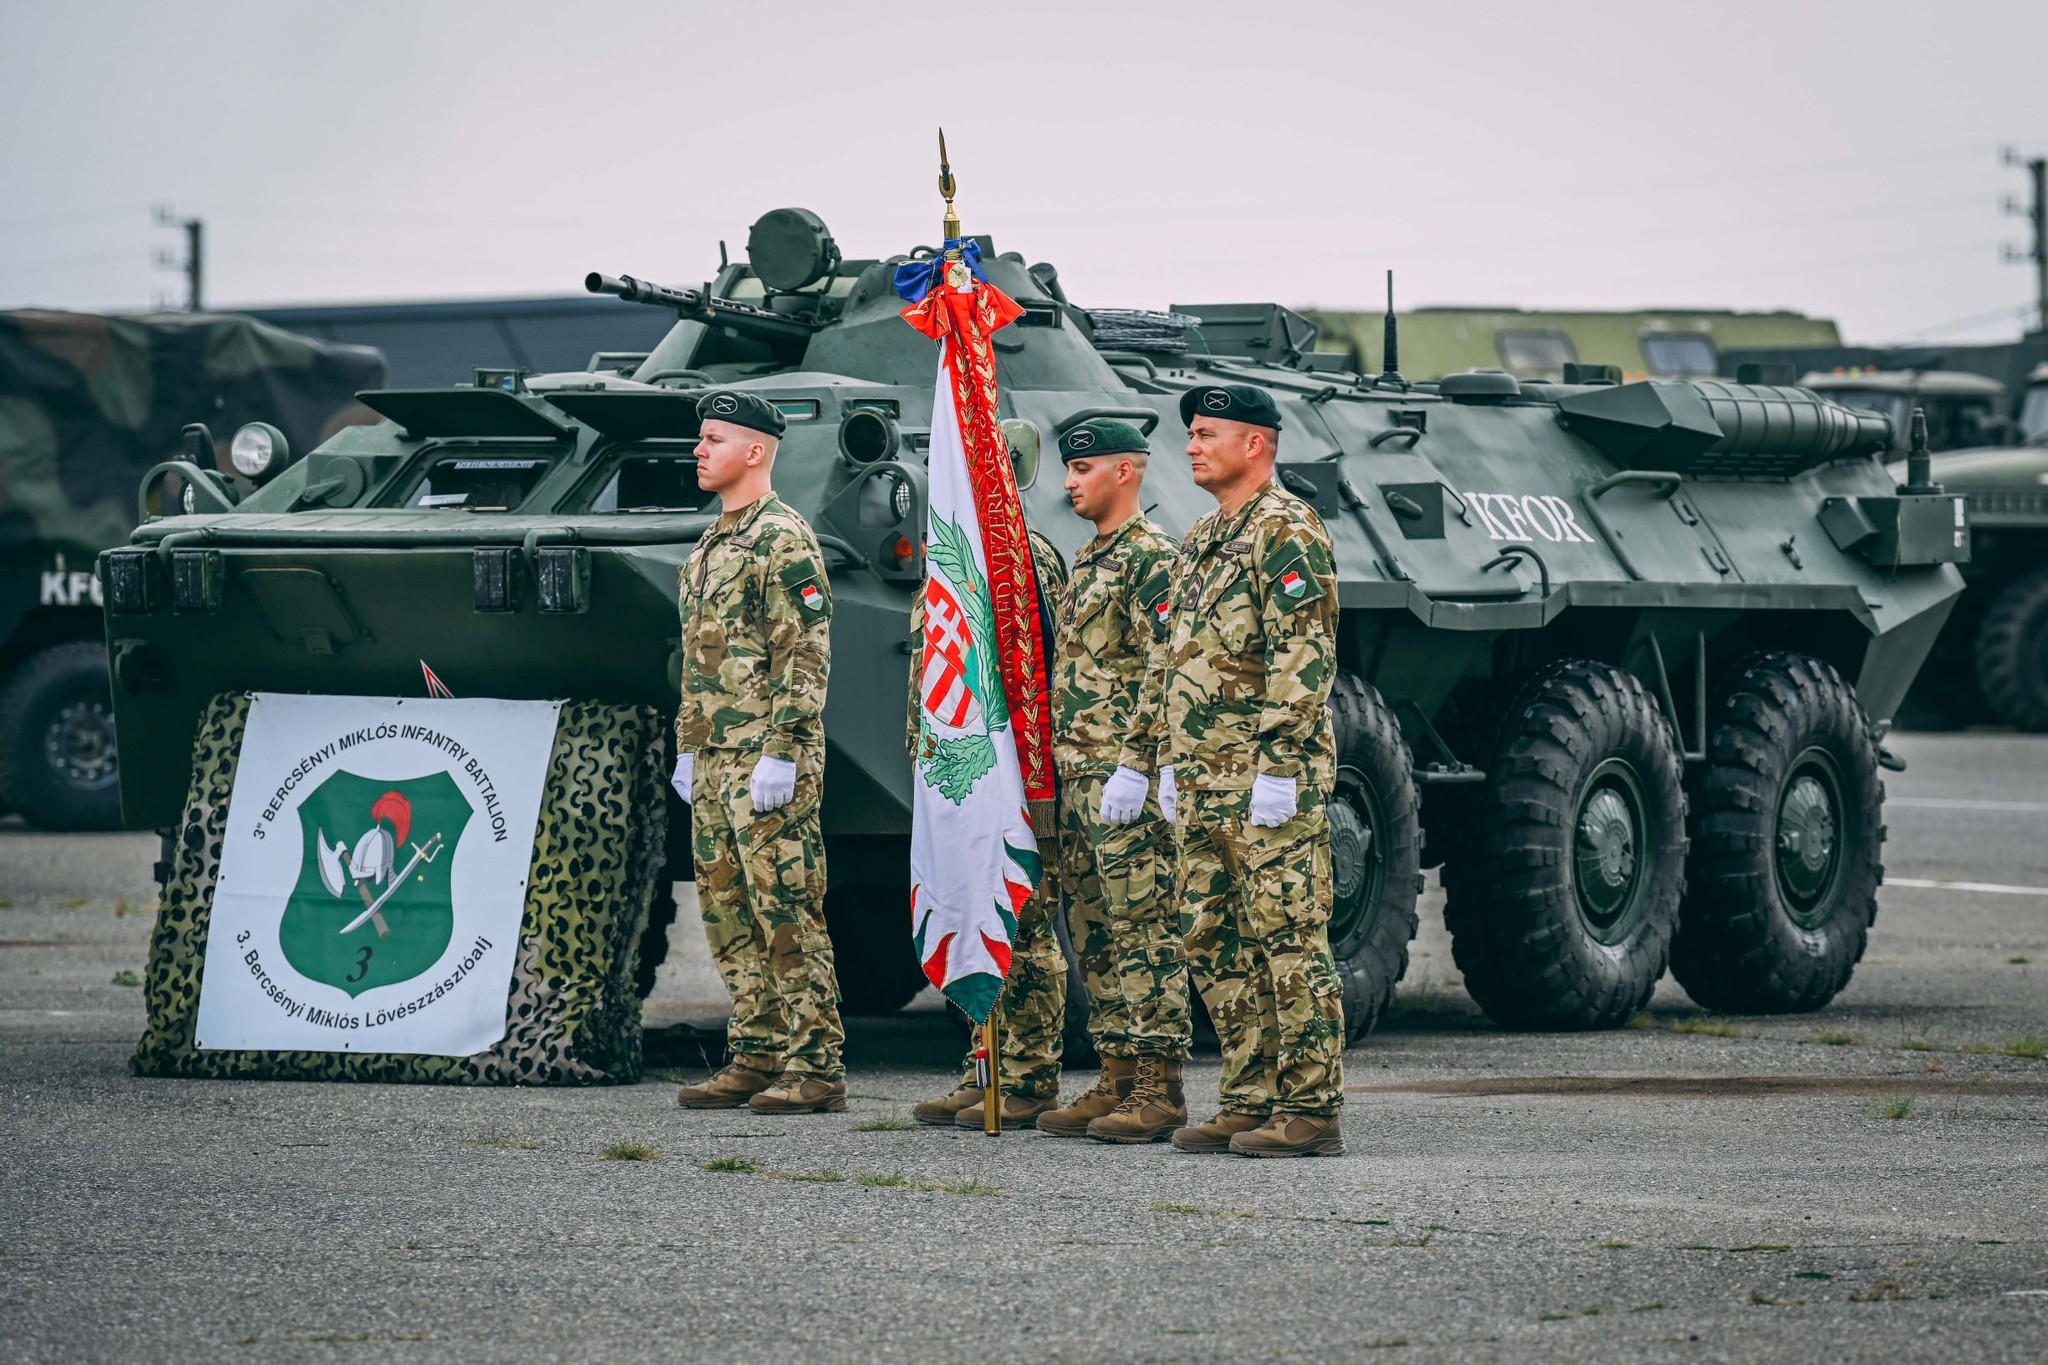 Ungarische Soldaten leisten einen wichtigen Beitrag für den Frieden im Kosovo